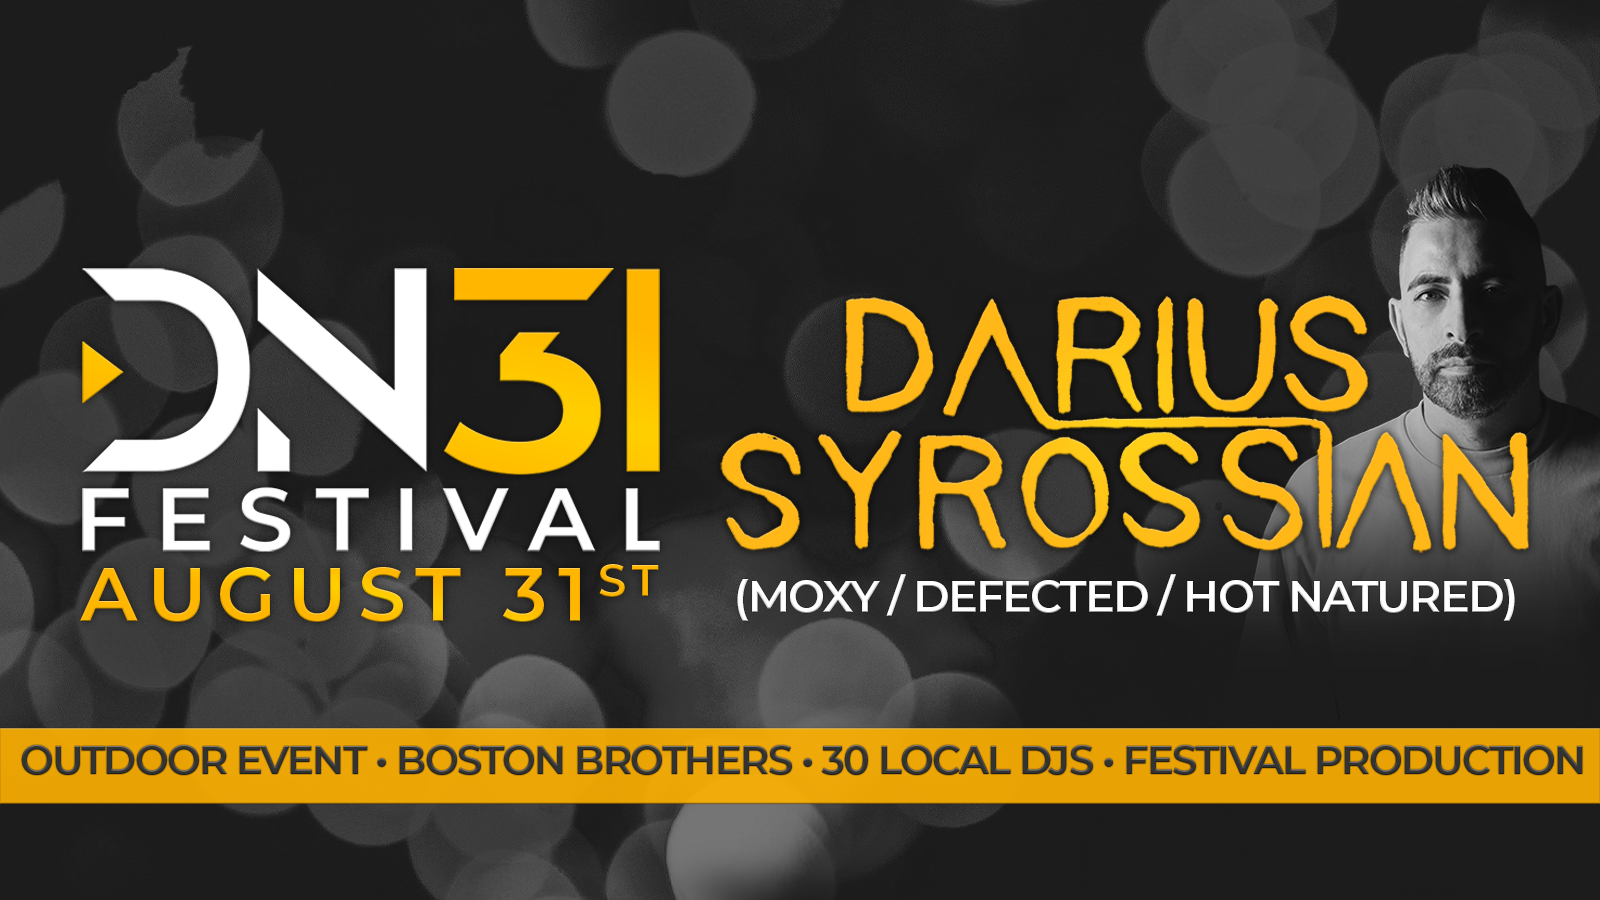 DN31 Festival Presents Darius Syrossian